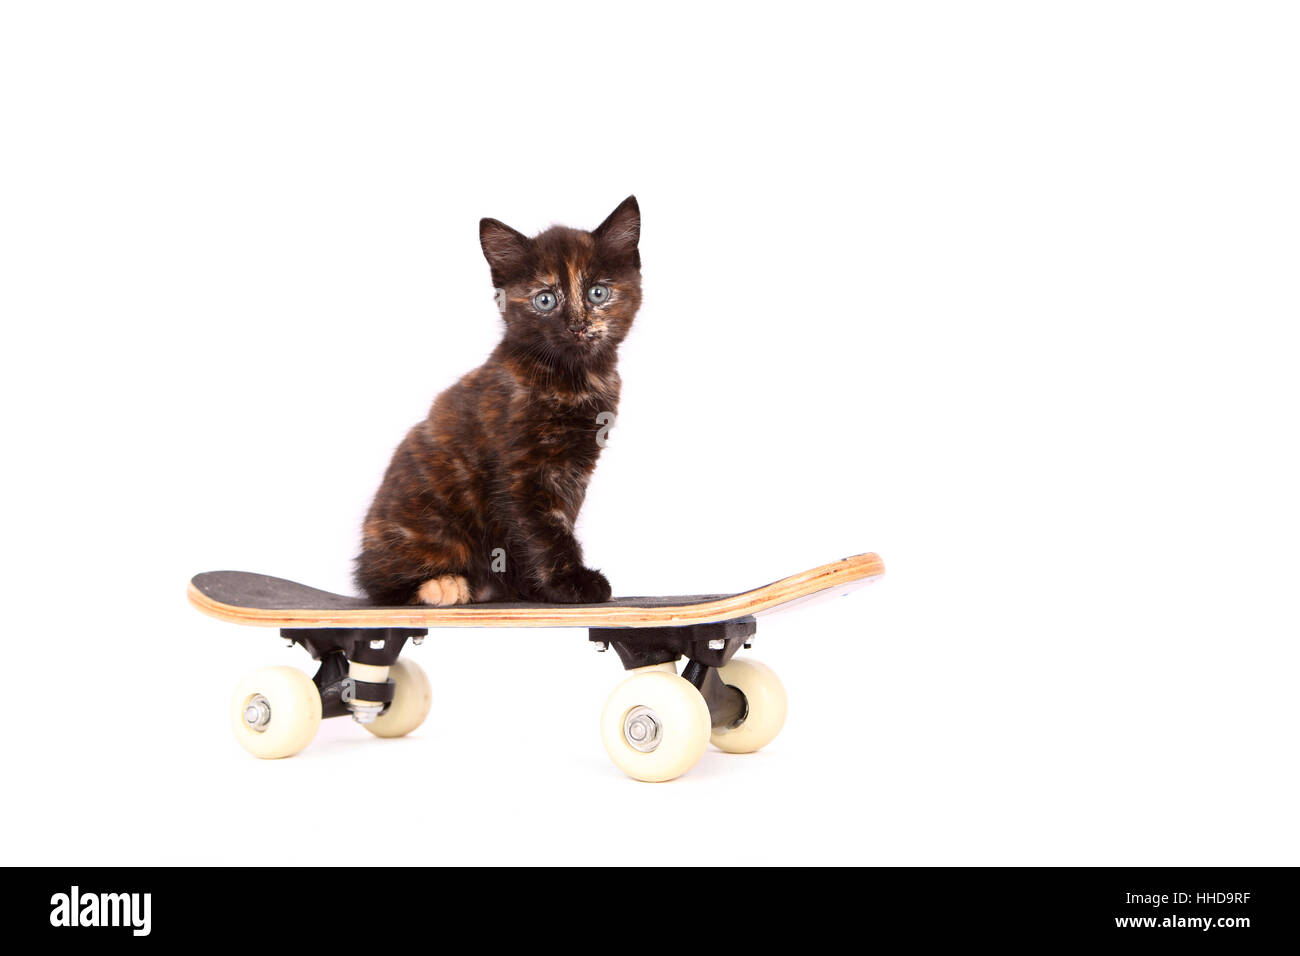 Europaeisch Kurzhaar. Kitten (6 weeks old) sitting on a skateboard. Studio picture against a white background Stock Photo